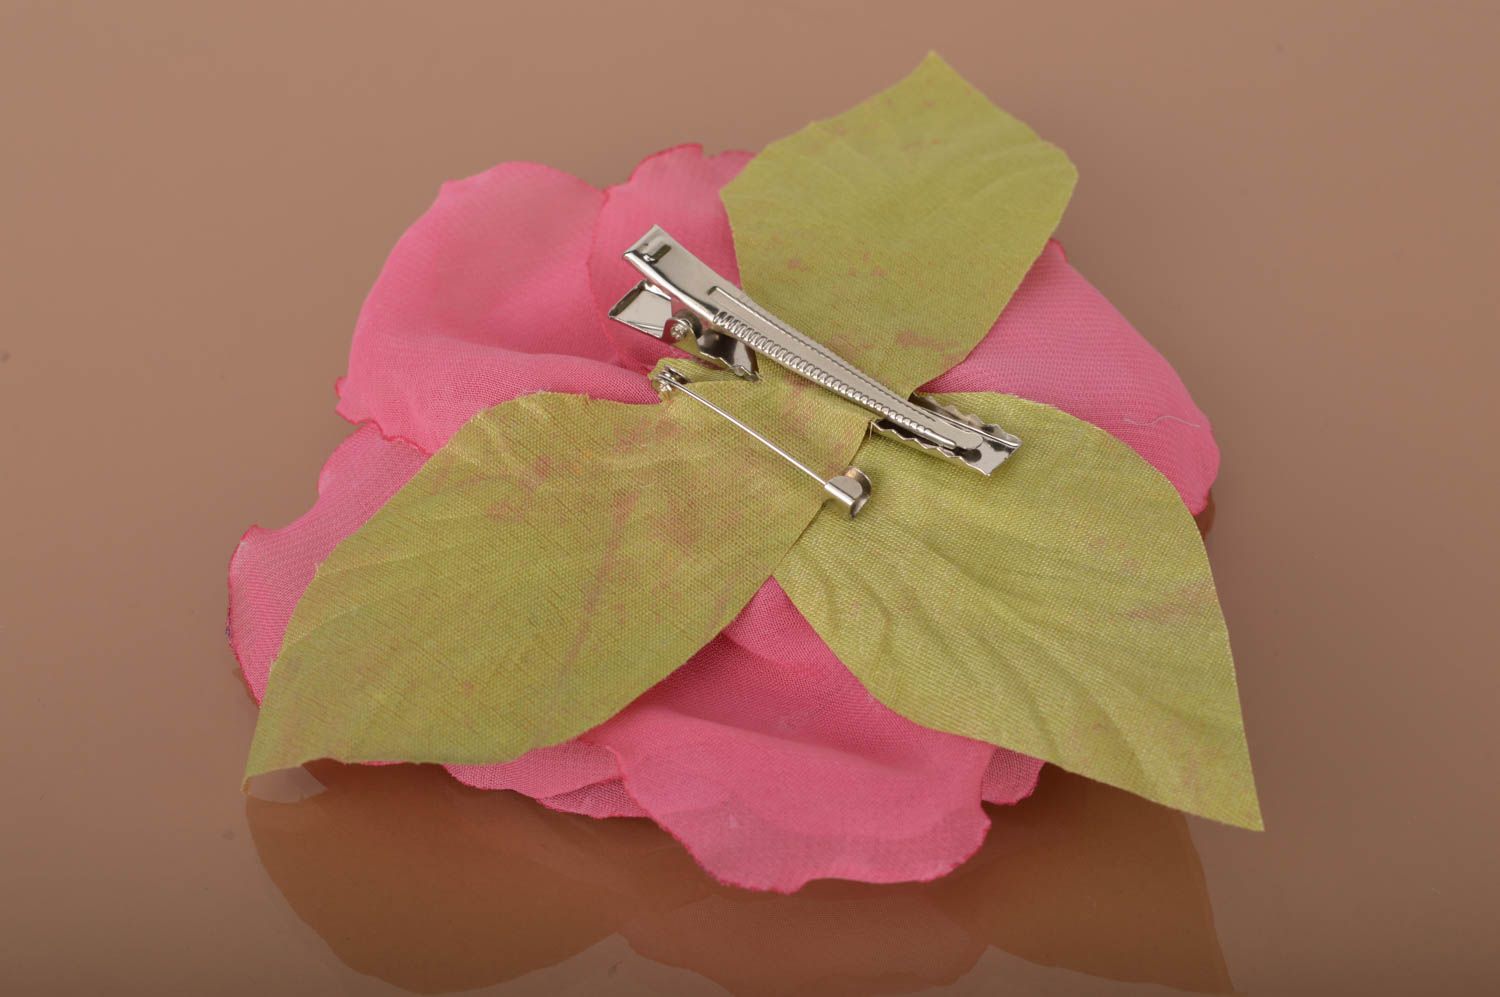 Брошь заколка в виде цветка пиона пышная розовая красивая нарядная ручной работы фото 4